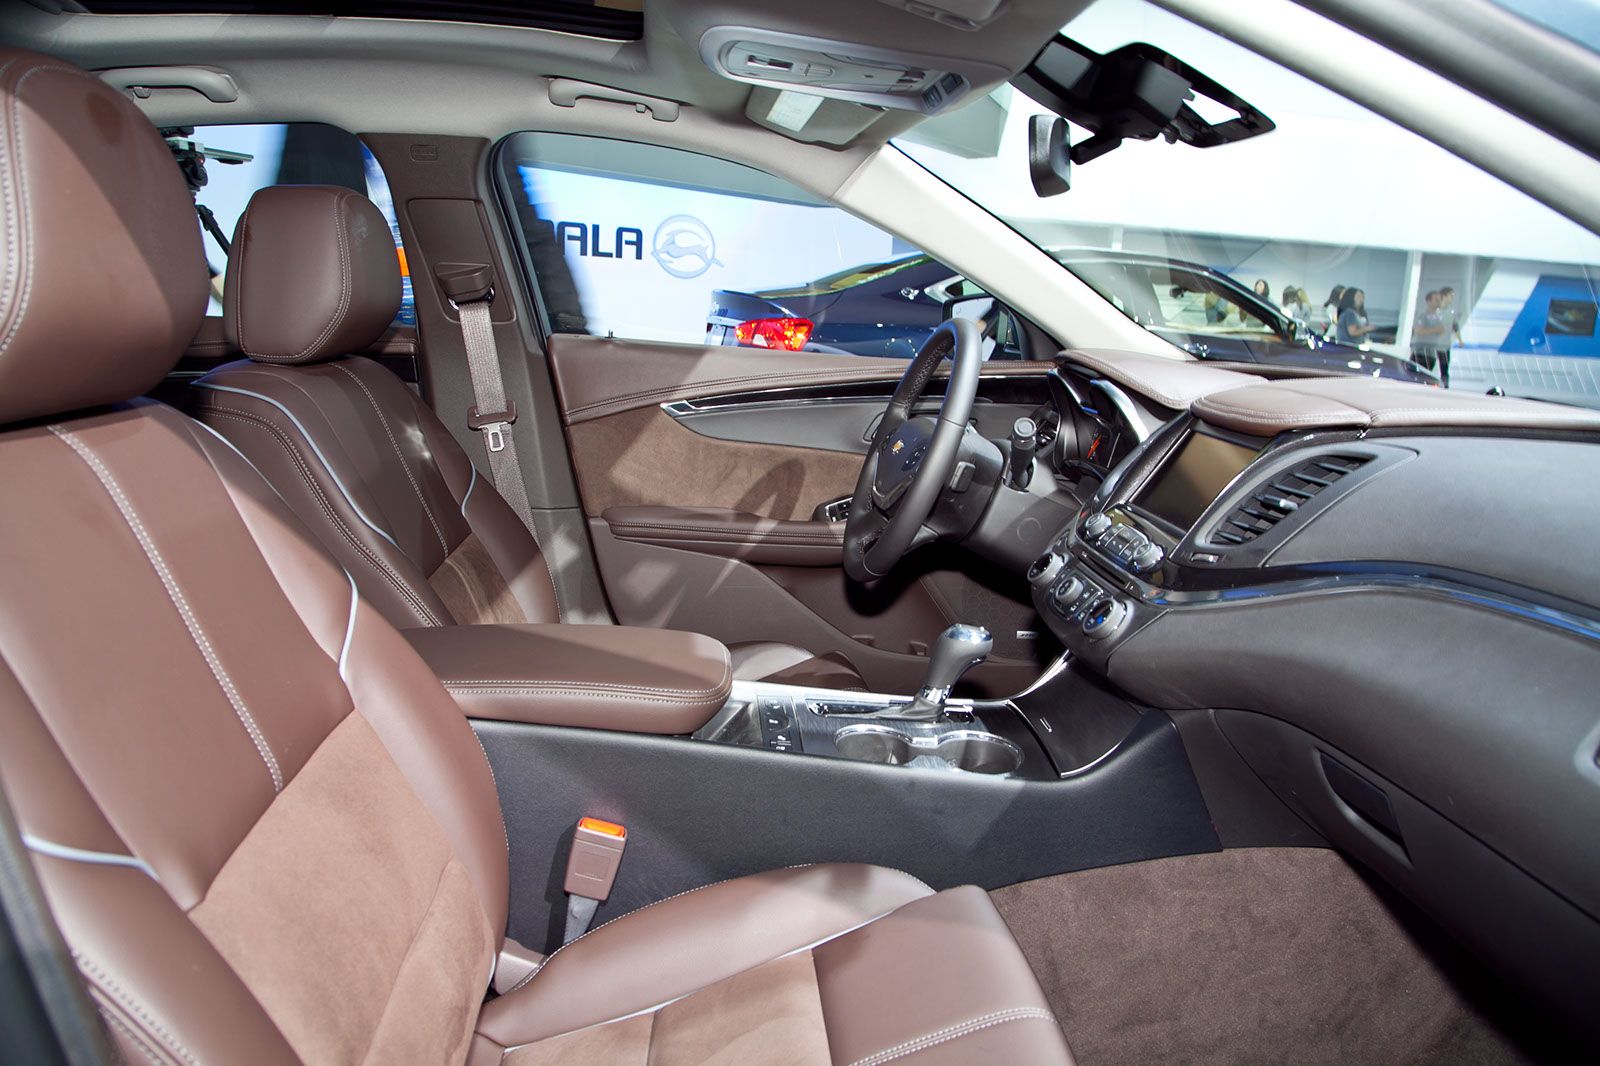 2014 - 2015 Chevrolet Impala